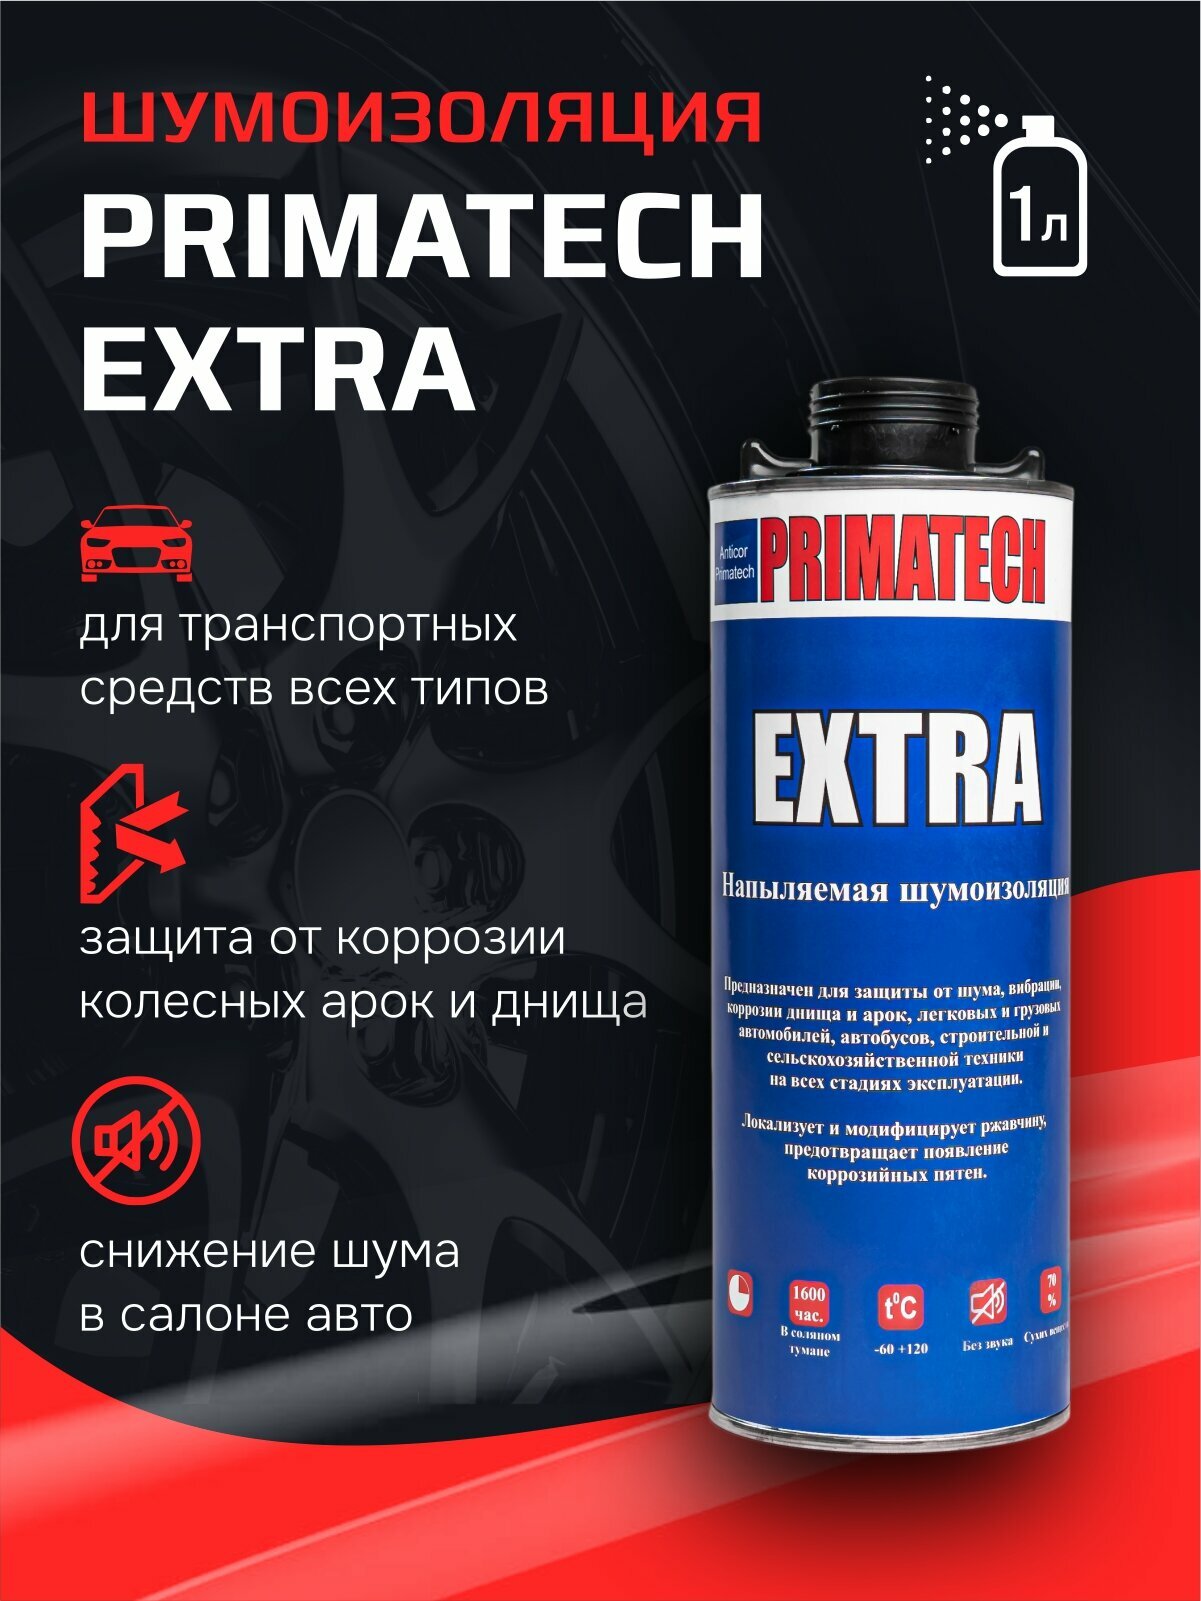 Напыляемая шумоизоляция PRIMATECH EXTRA Premium 1л. шумоизоляция для авто